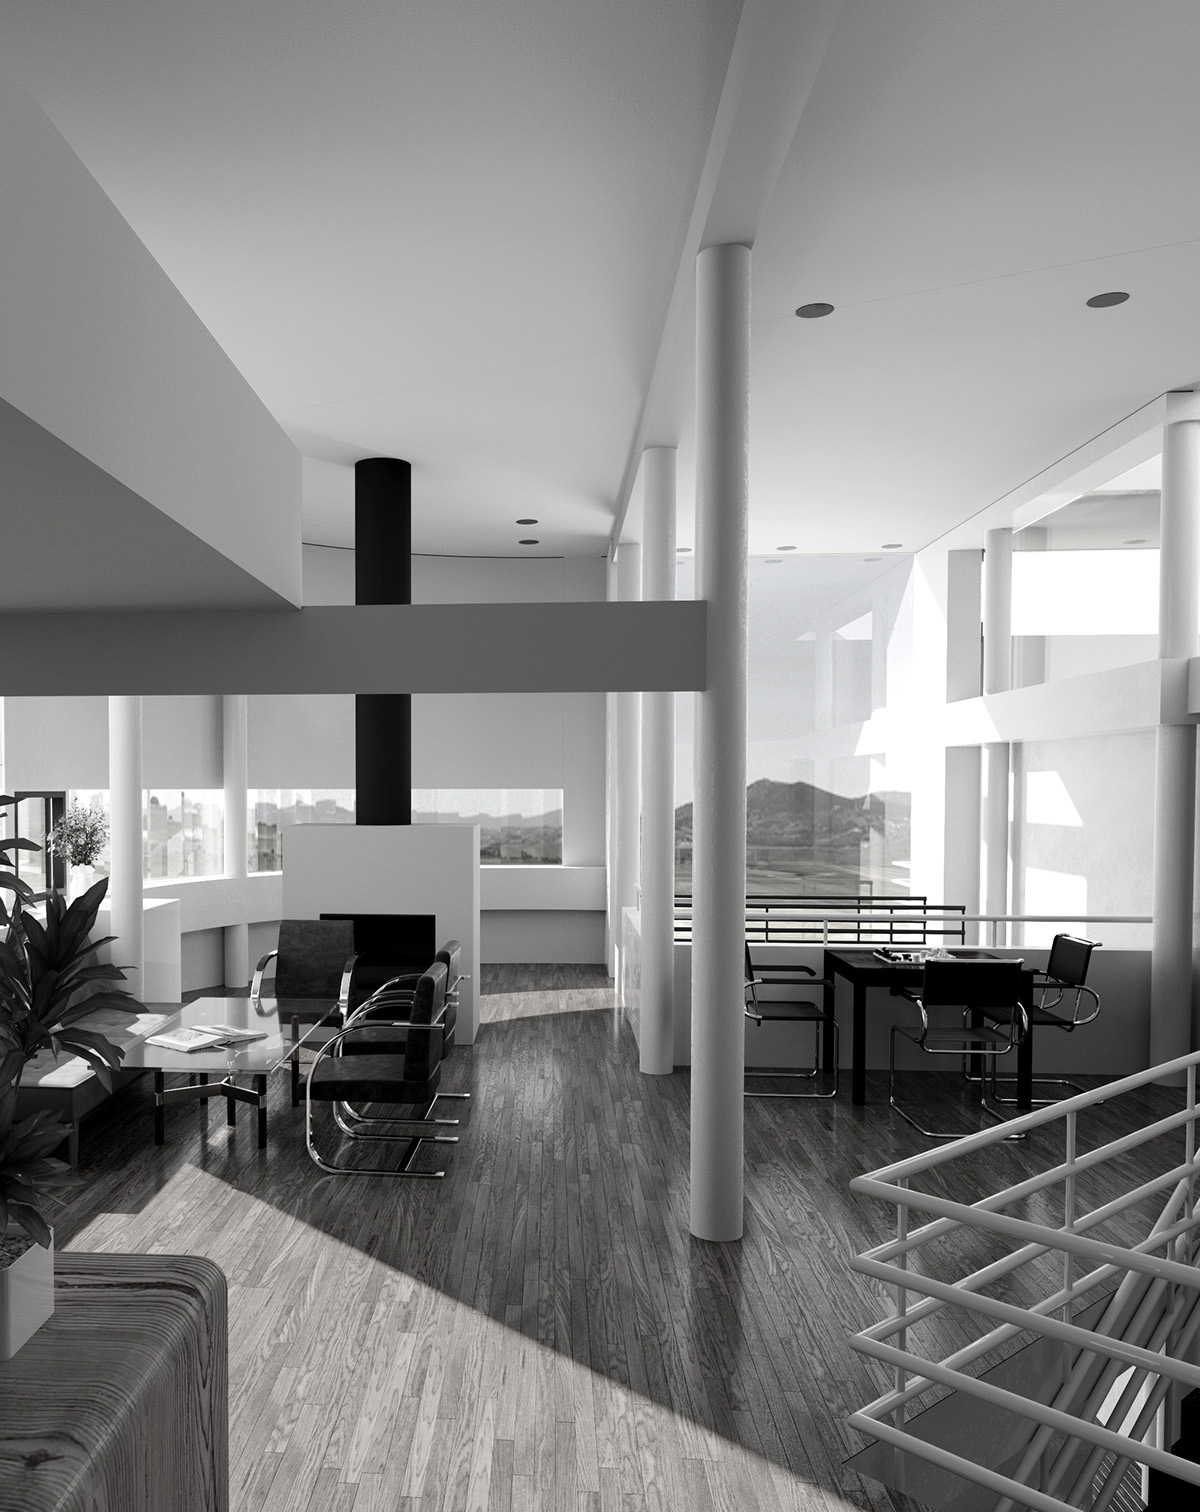 #Saltzman #Meier #architecture #interior #CG #visualization 